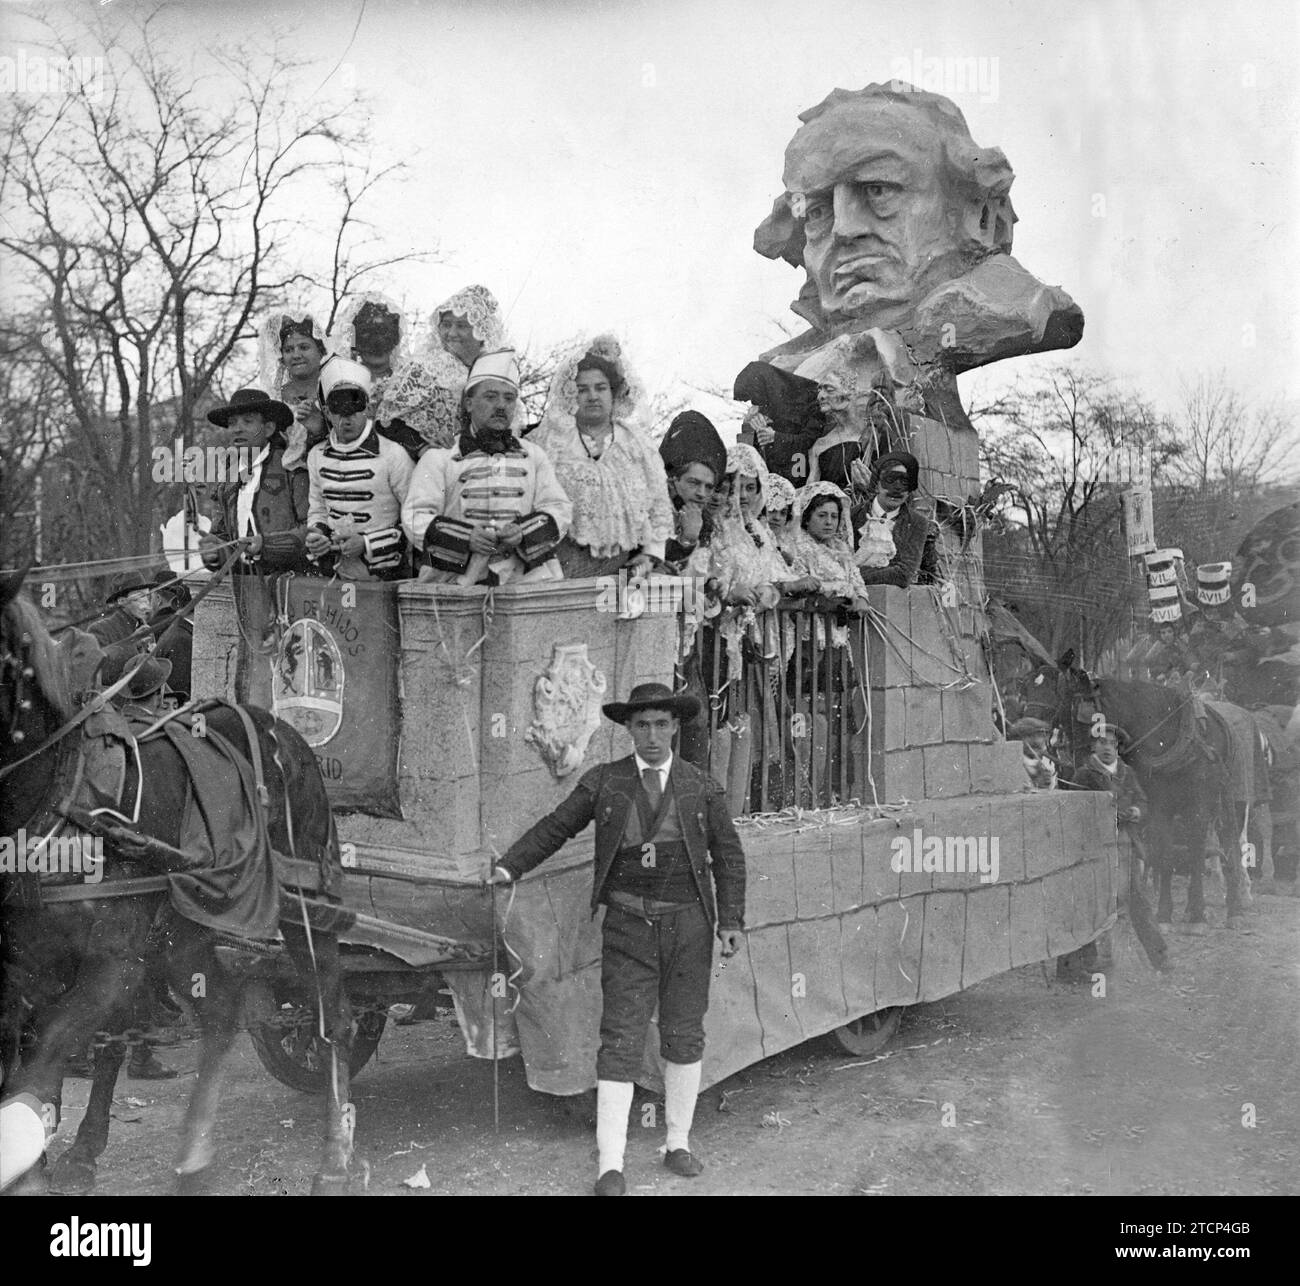 Du carnaval de 1916 à Madrid. 'Goya, artistique', flotteur présenté, en dehors du Concours, par le centre Hijos de Madrid. Crédit : Album / Archivo ABC / José Zegri Banque D'Images